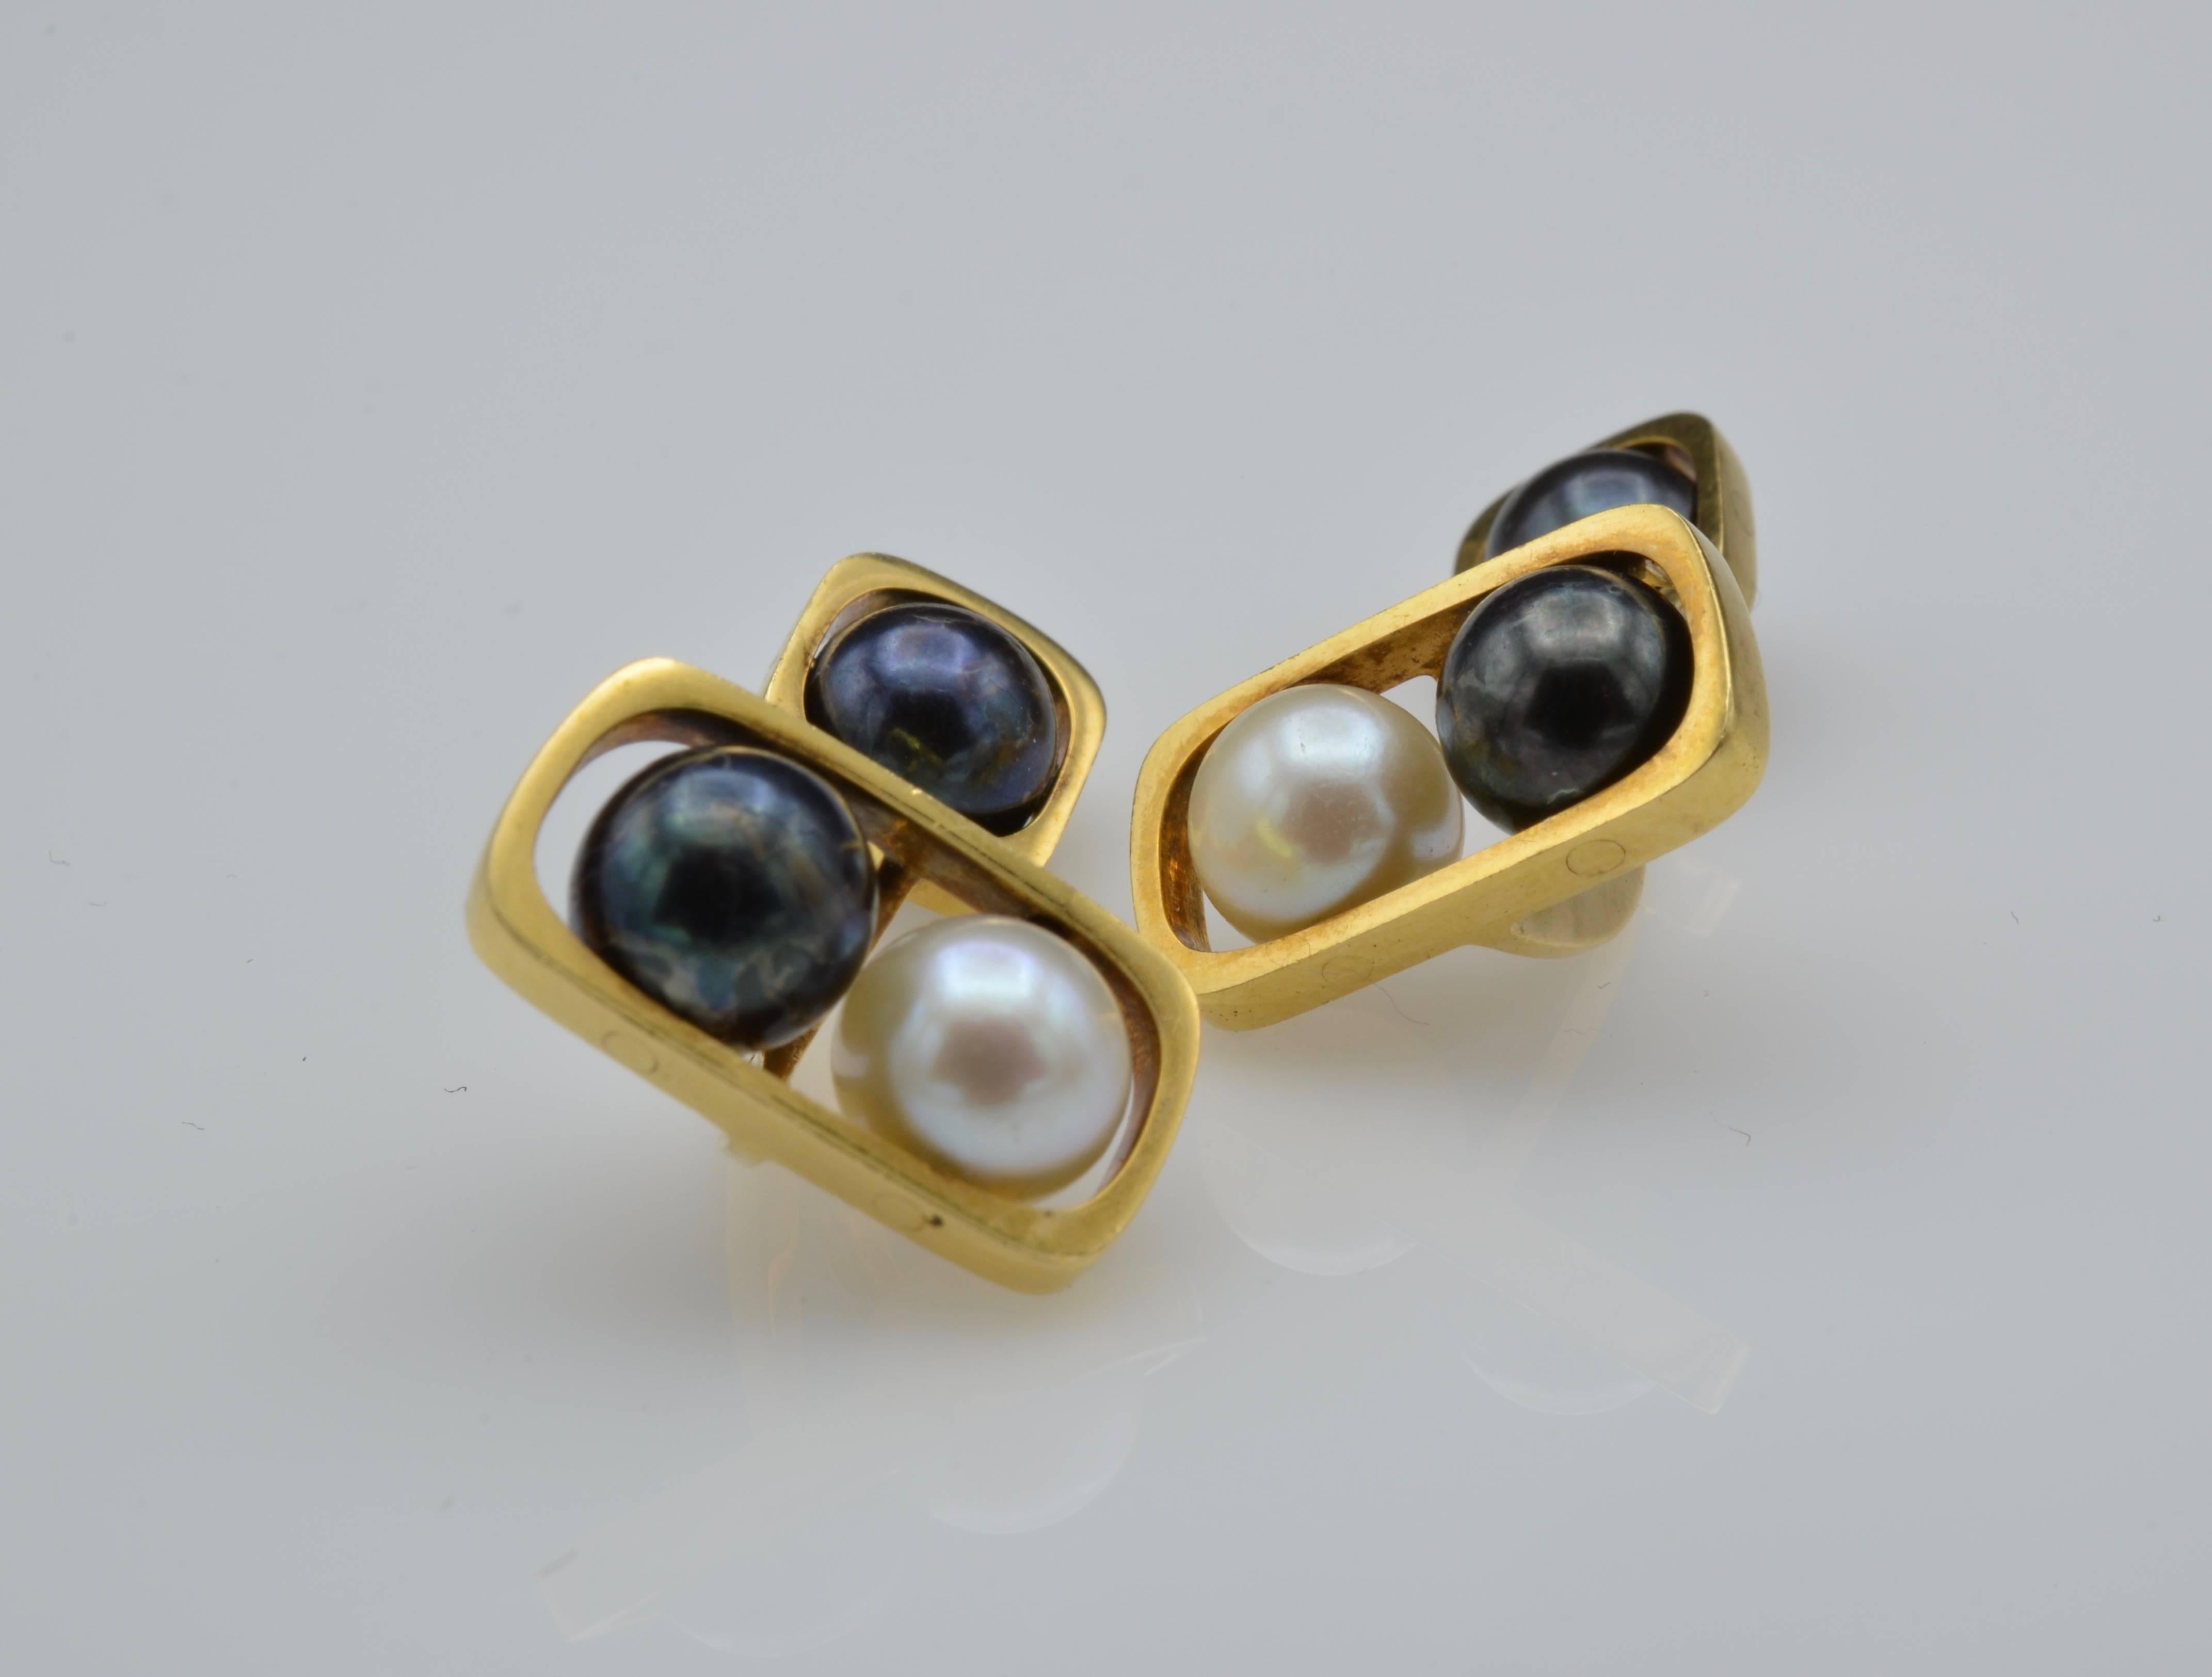 Ces jolis boutons de manchette en or et perles sont magnifiquement conçus avec des perles blanches et noires suspendues à un cadre moderne en or 18 carats. Les perles tournent et créent un accent étonnant pour n'importe quelle manchette.
Ils sont